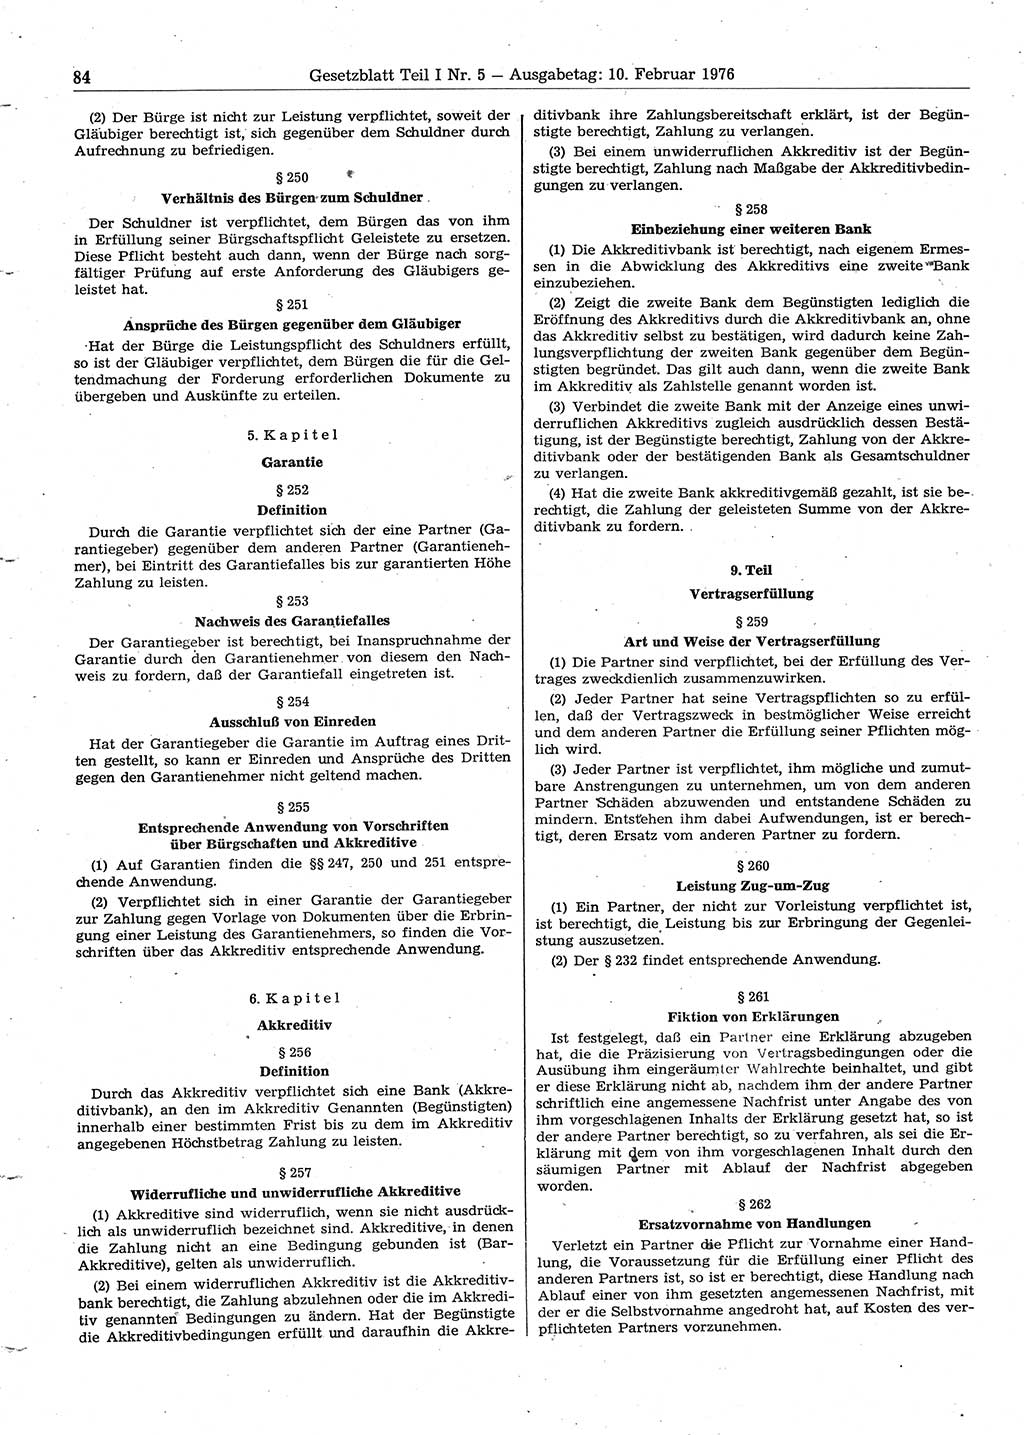 Gesetzblatt (GBl.) der Deutschen Demokratischen Republik (DDR) Teil Ⅰ 1976, Seite 84 (GBl. DDR Ⅰ 1976, S. 84)